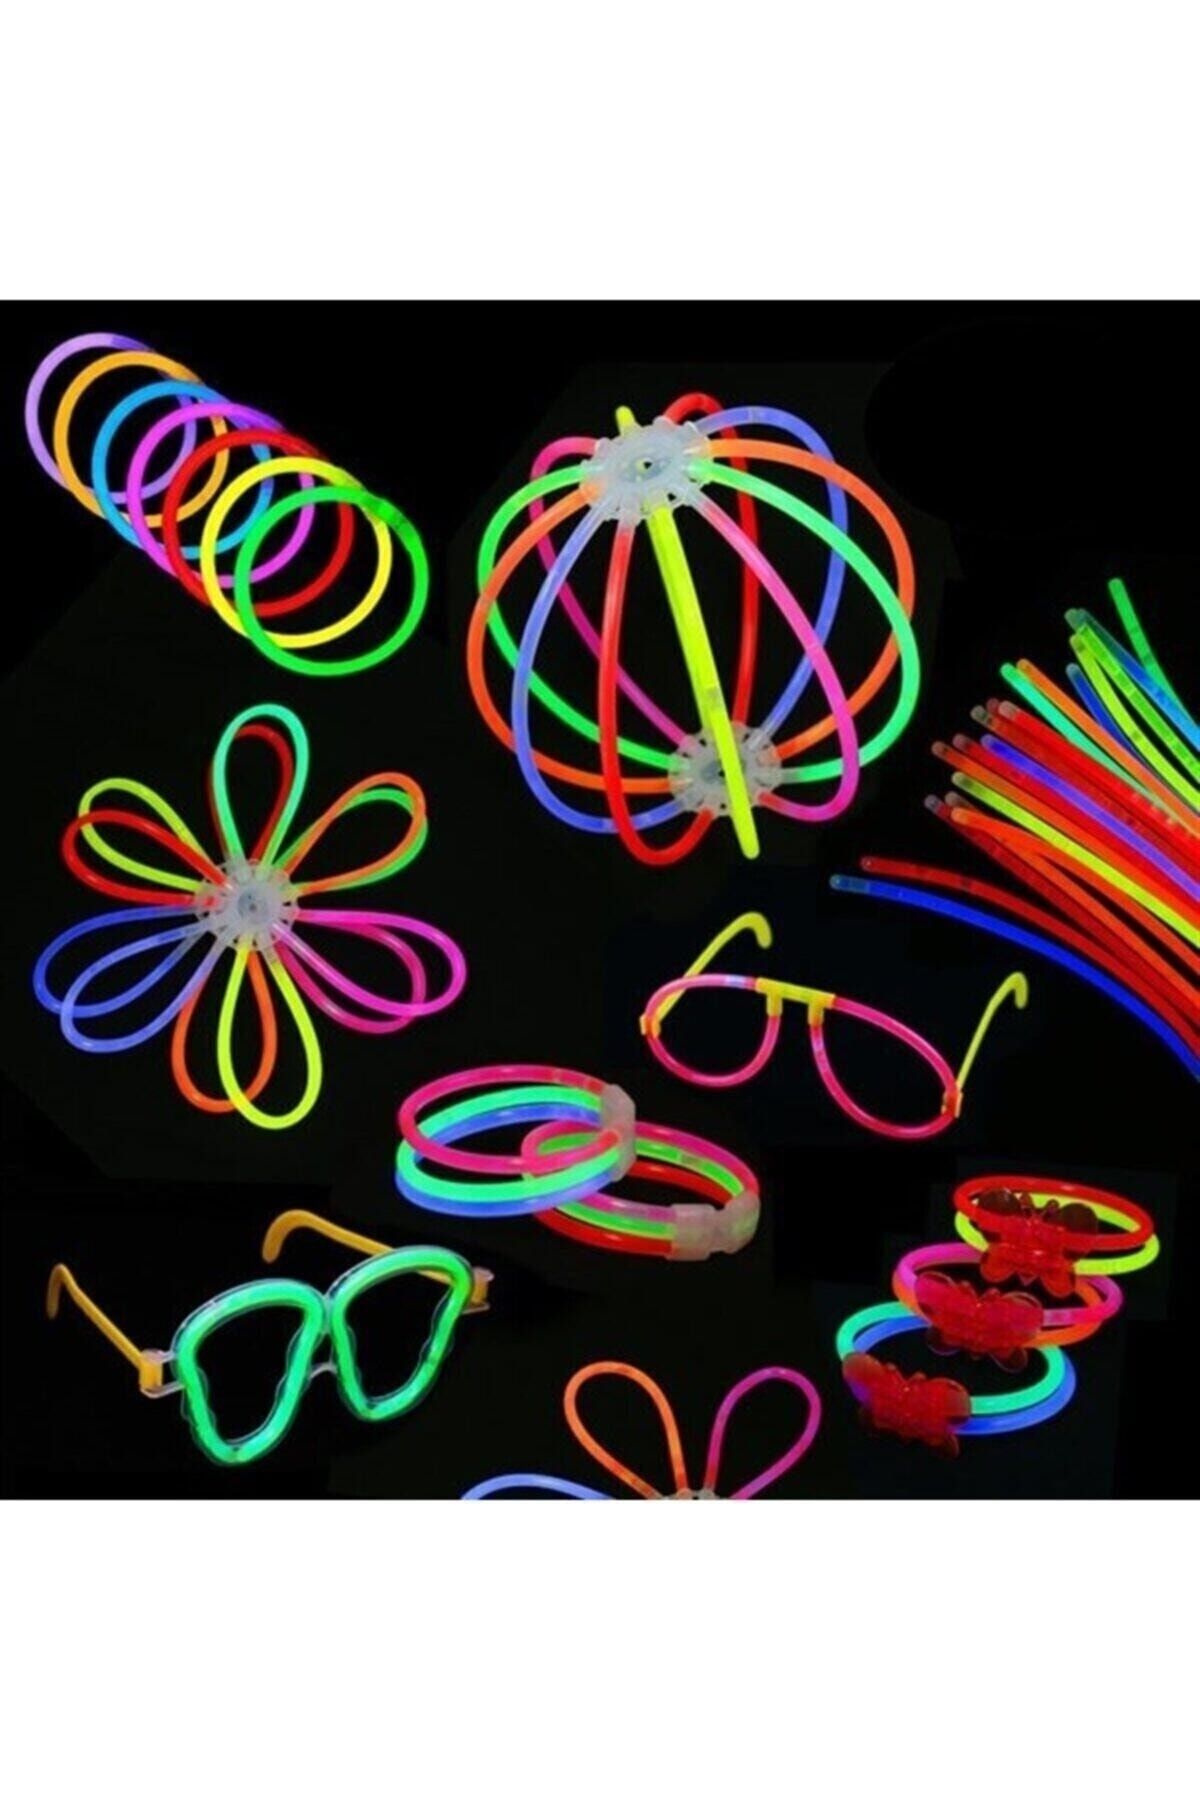 pazariz Glow Stick Fosforlu Neon Çubuk 1 Adet, Işık Saçan Çubuk , Işıklı Bileklik 20 Cm